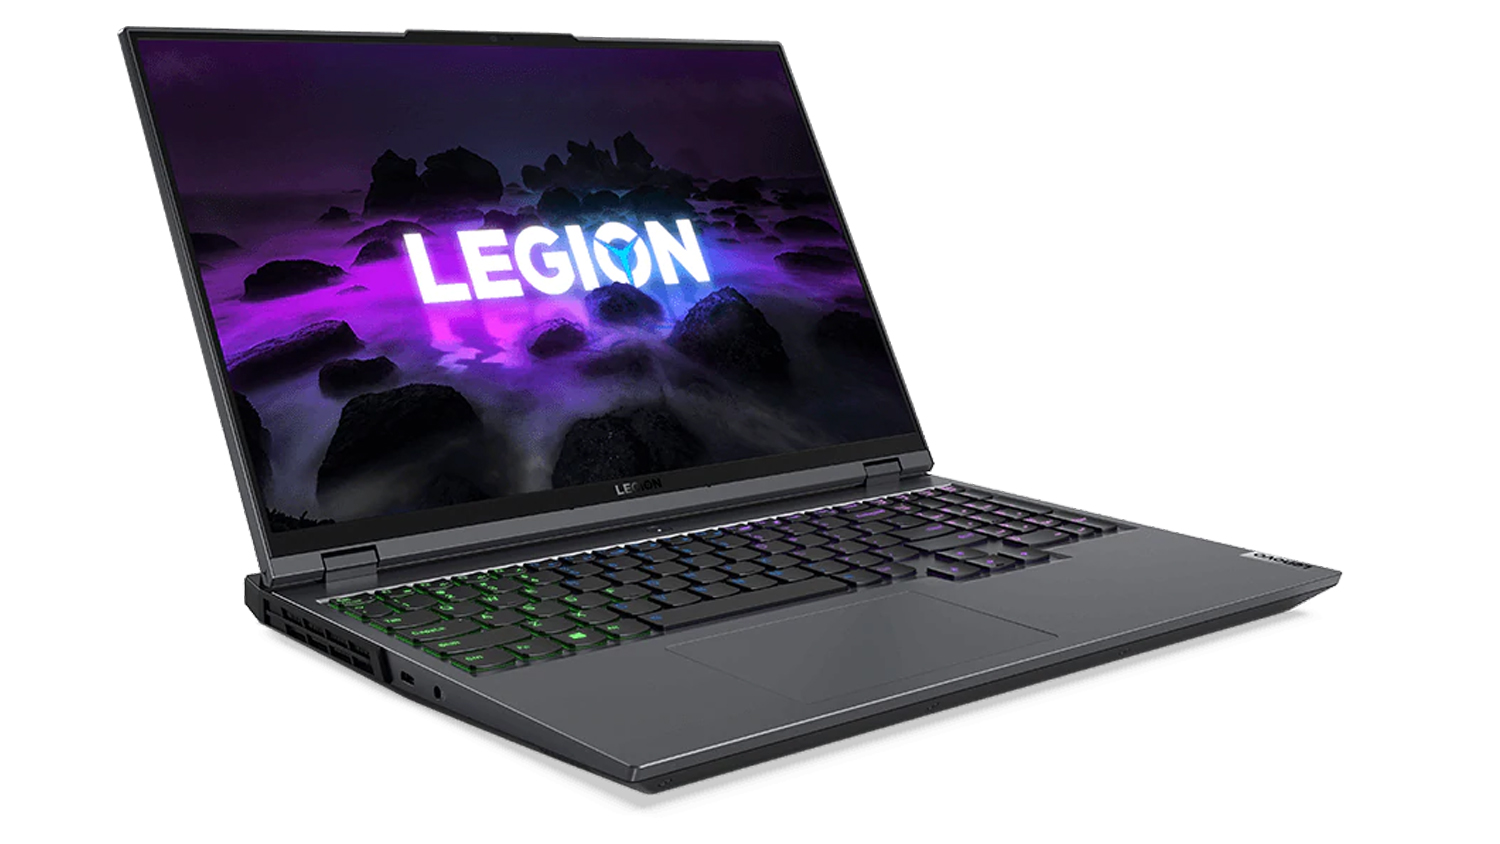 Цагаан дэвсгэр дээр Lenovo Legion 5 Pro. Зөөврийн компьютер нь нээлттэй бөгөөд дэлгэцэн дээр Легионы лого, эргэн тойронд нь хар хад мэт харагдах өнгөлөг дэвсгэр байна.